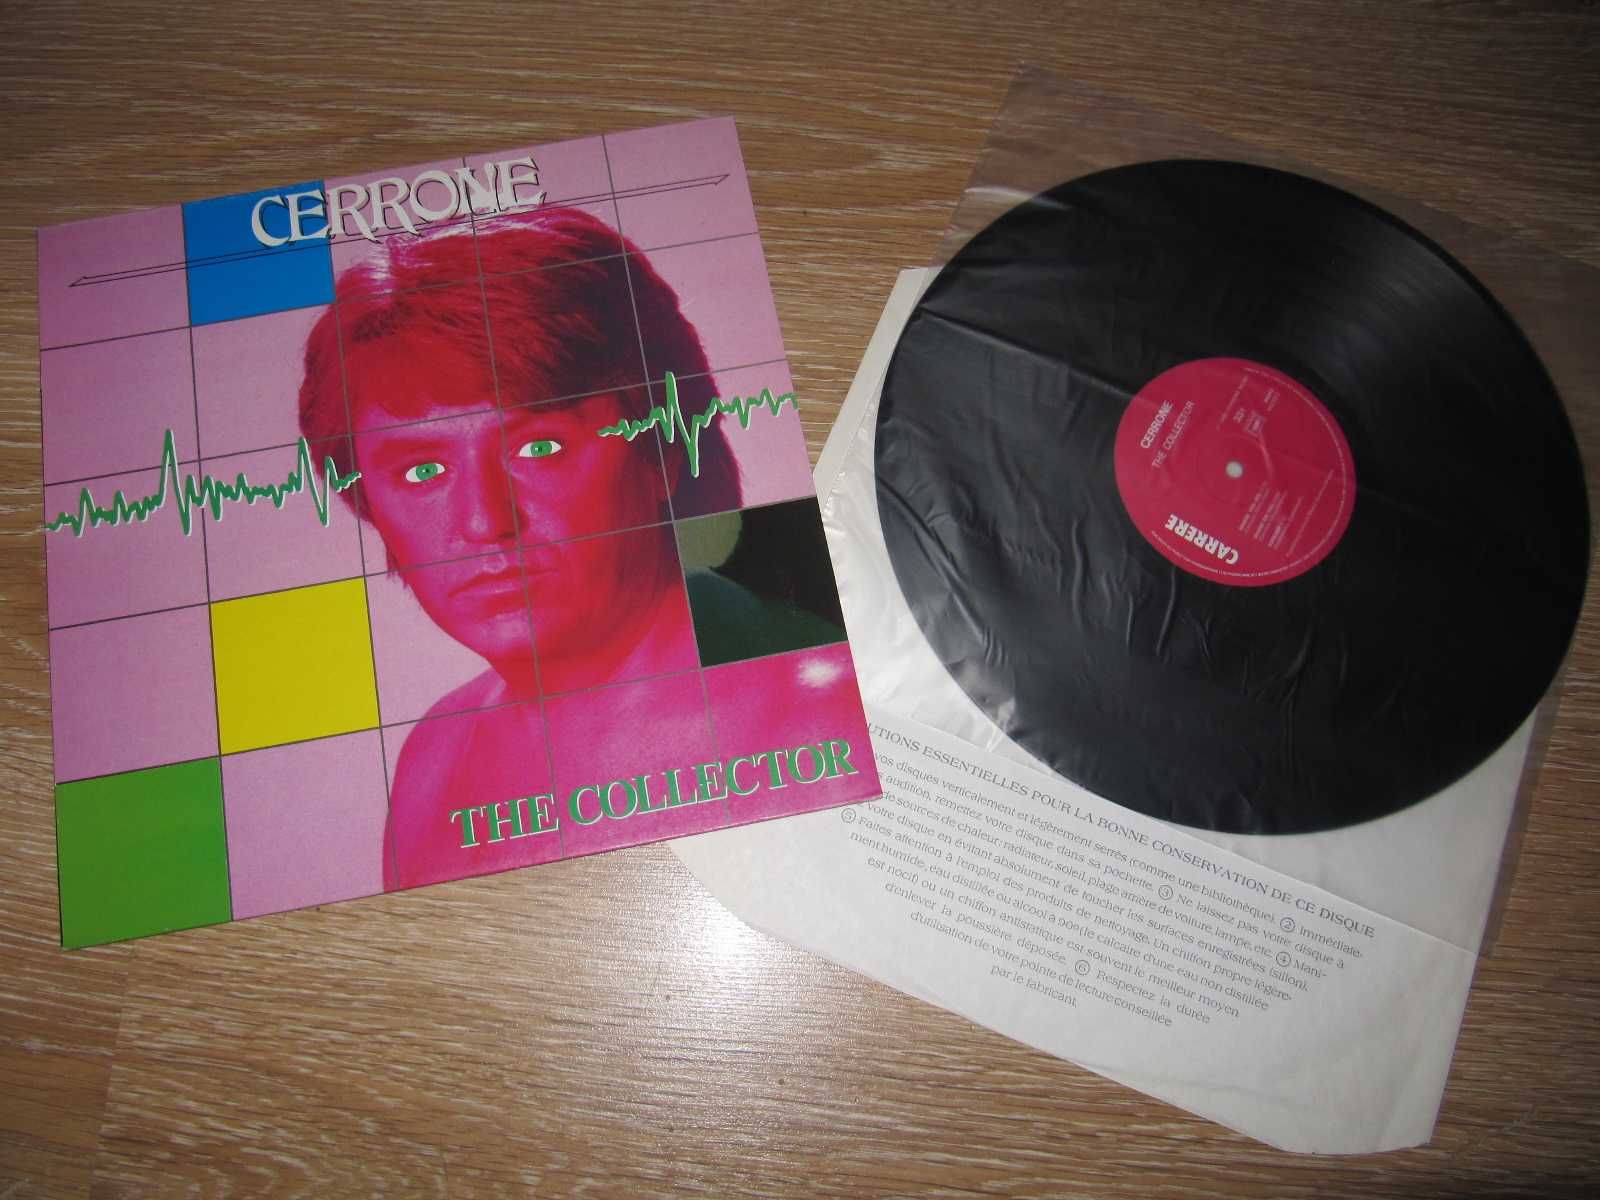 РЕДКИЙ Виниловый Альбом CERRONE -The Collector- 1985 ОРИГИНАЛ (France)